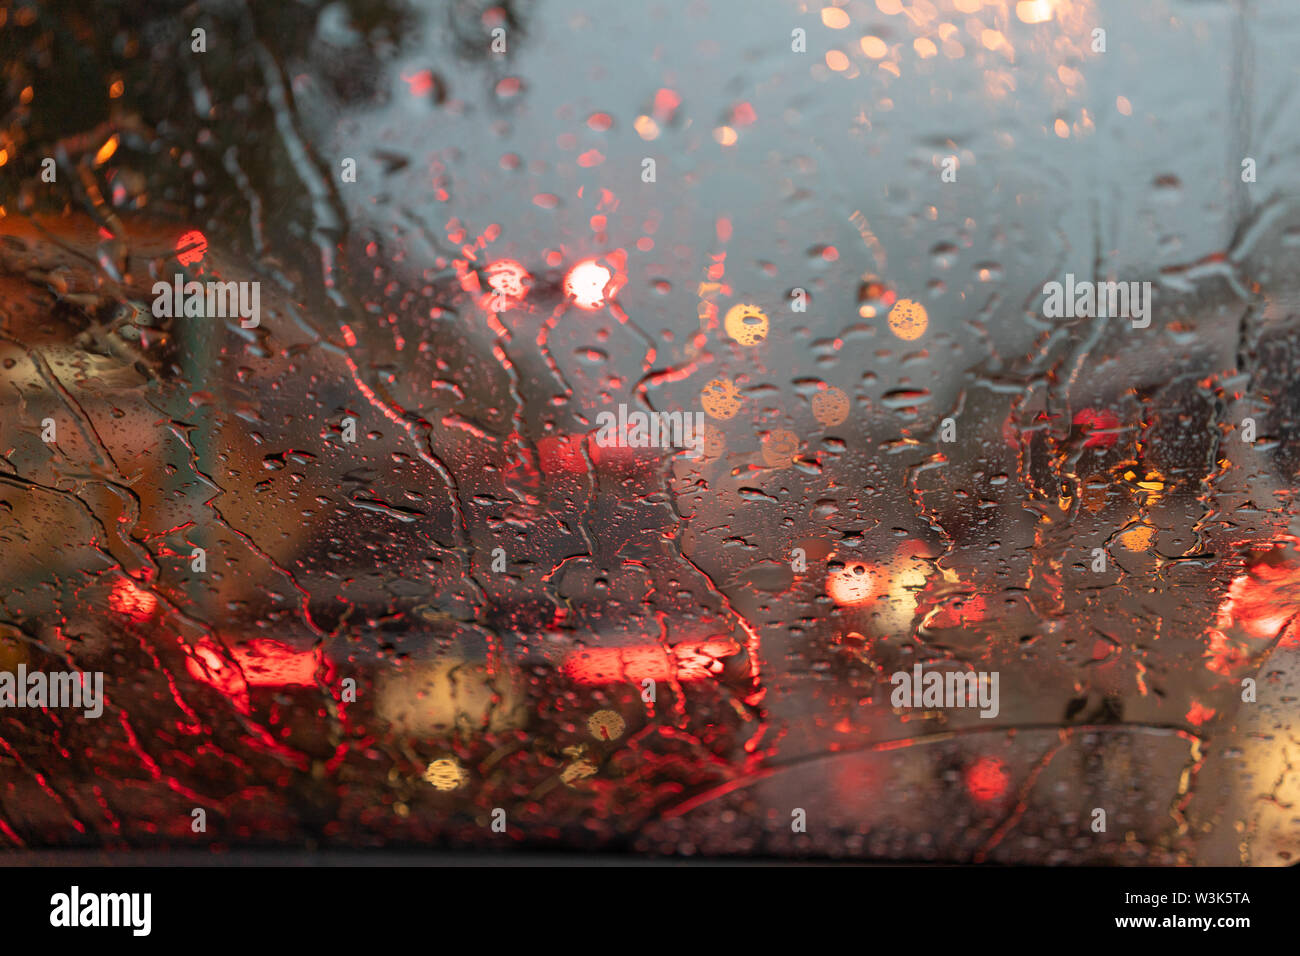 Kostenloses Foto zum Thema: auto, geheimnis, mini van, nacht, regen,  seitenspiegel, städtisch, tropfen, vertikaler schuss